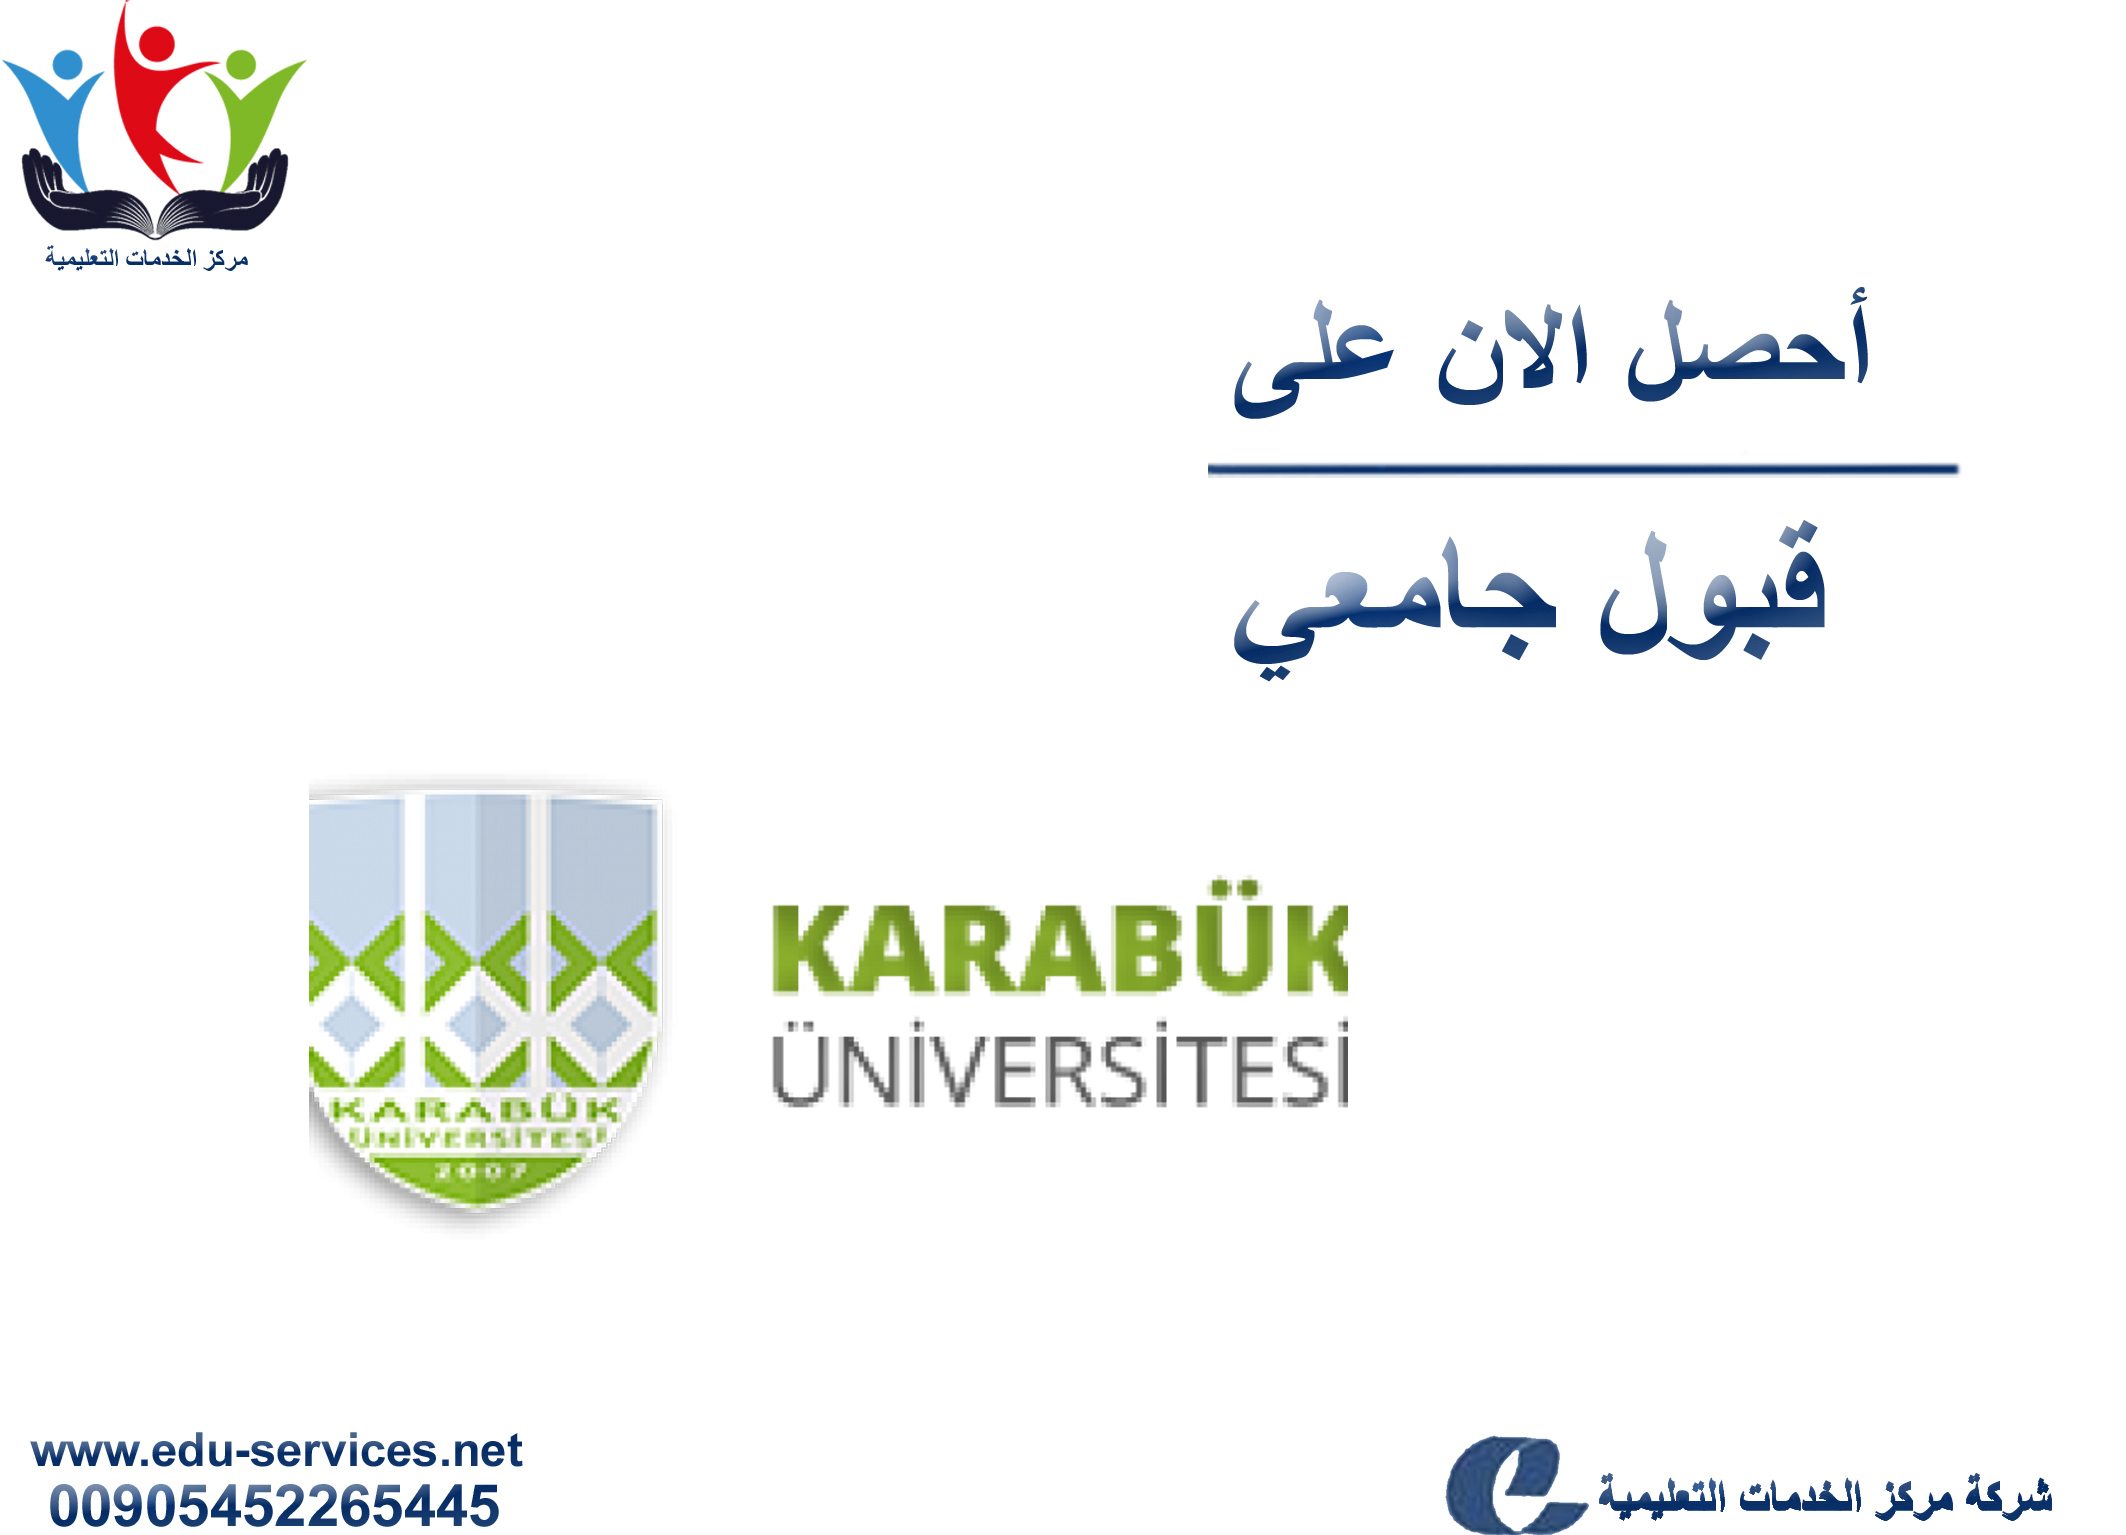 افتتاح التسجيل على جامعة كارابوك لبرنامج الدراسات العليا للعام 2019-2020